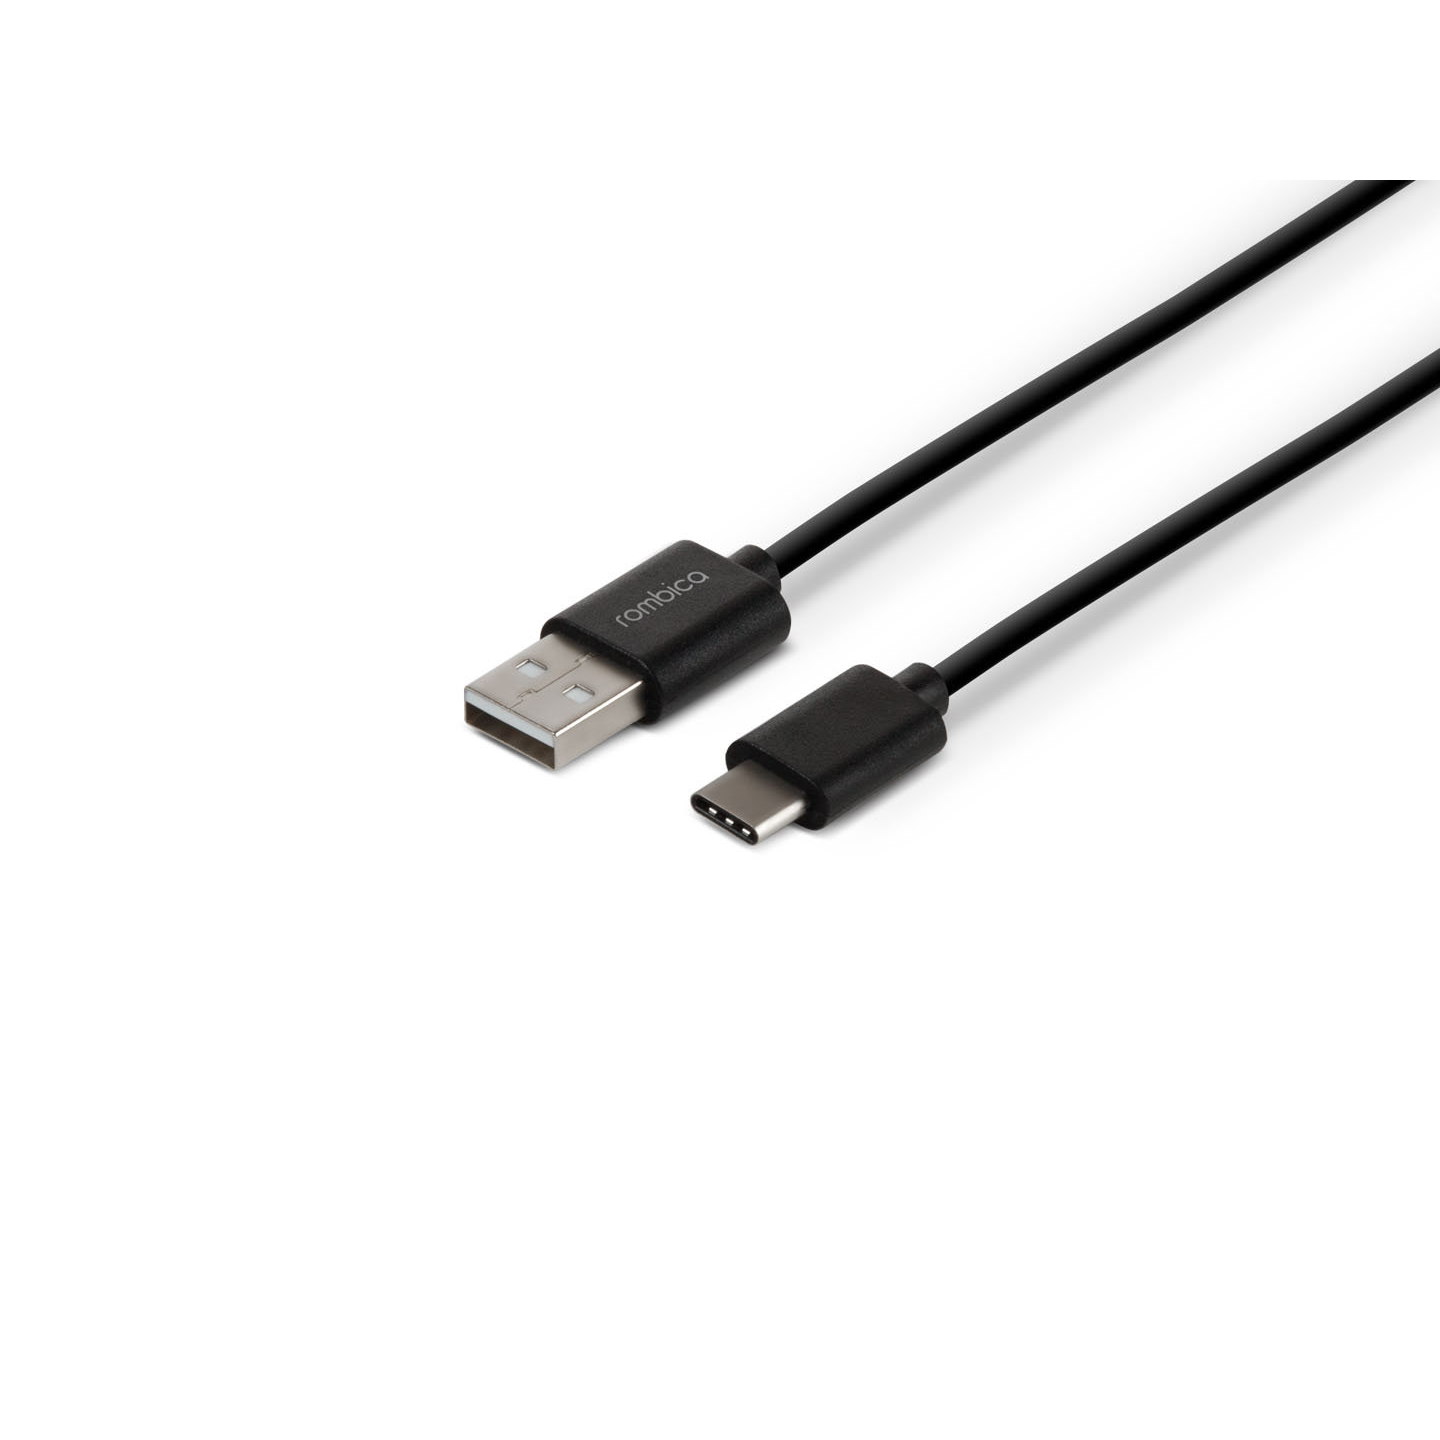 Кабель Rombica Digital CR-01, USB - USB Type-C, пластик, 1м, черный кабель rombica digital mr 01 black